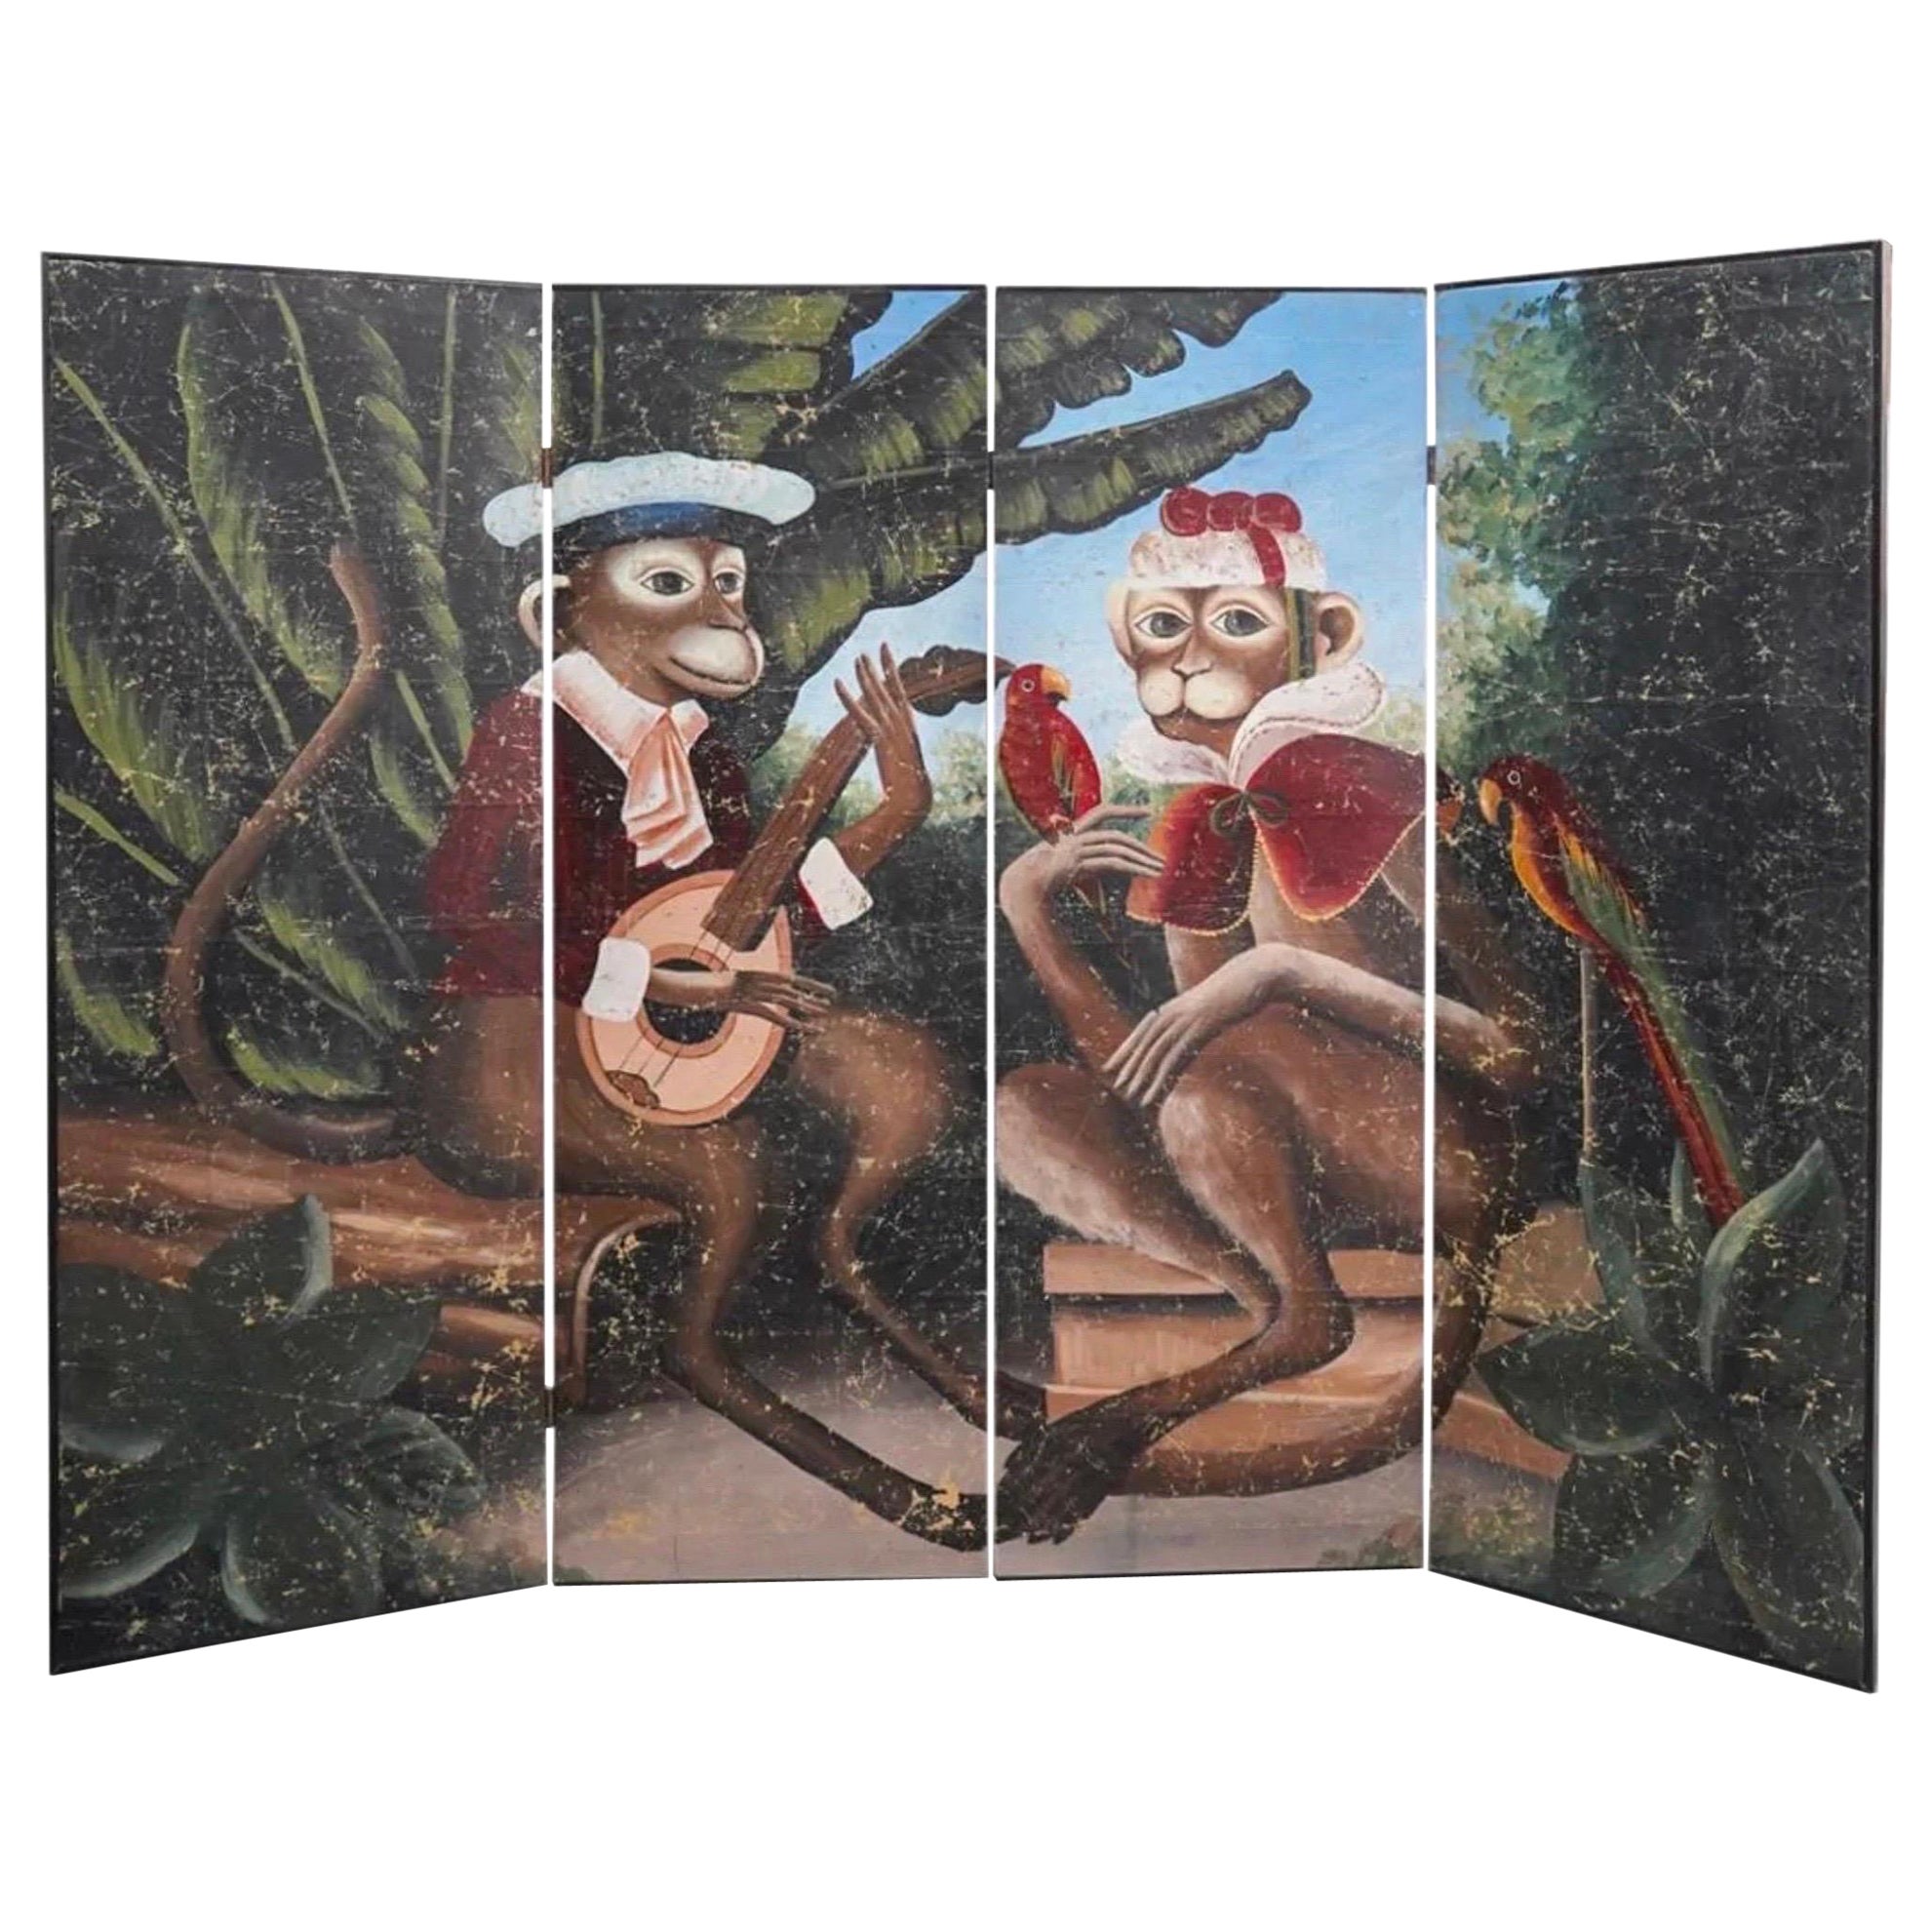 Vintage Decorative 4 Panels Monkeys Screen or Room Divider